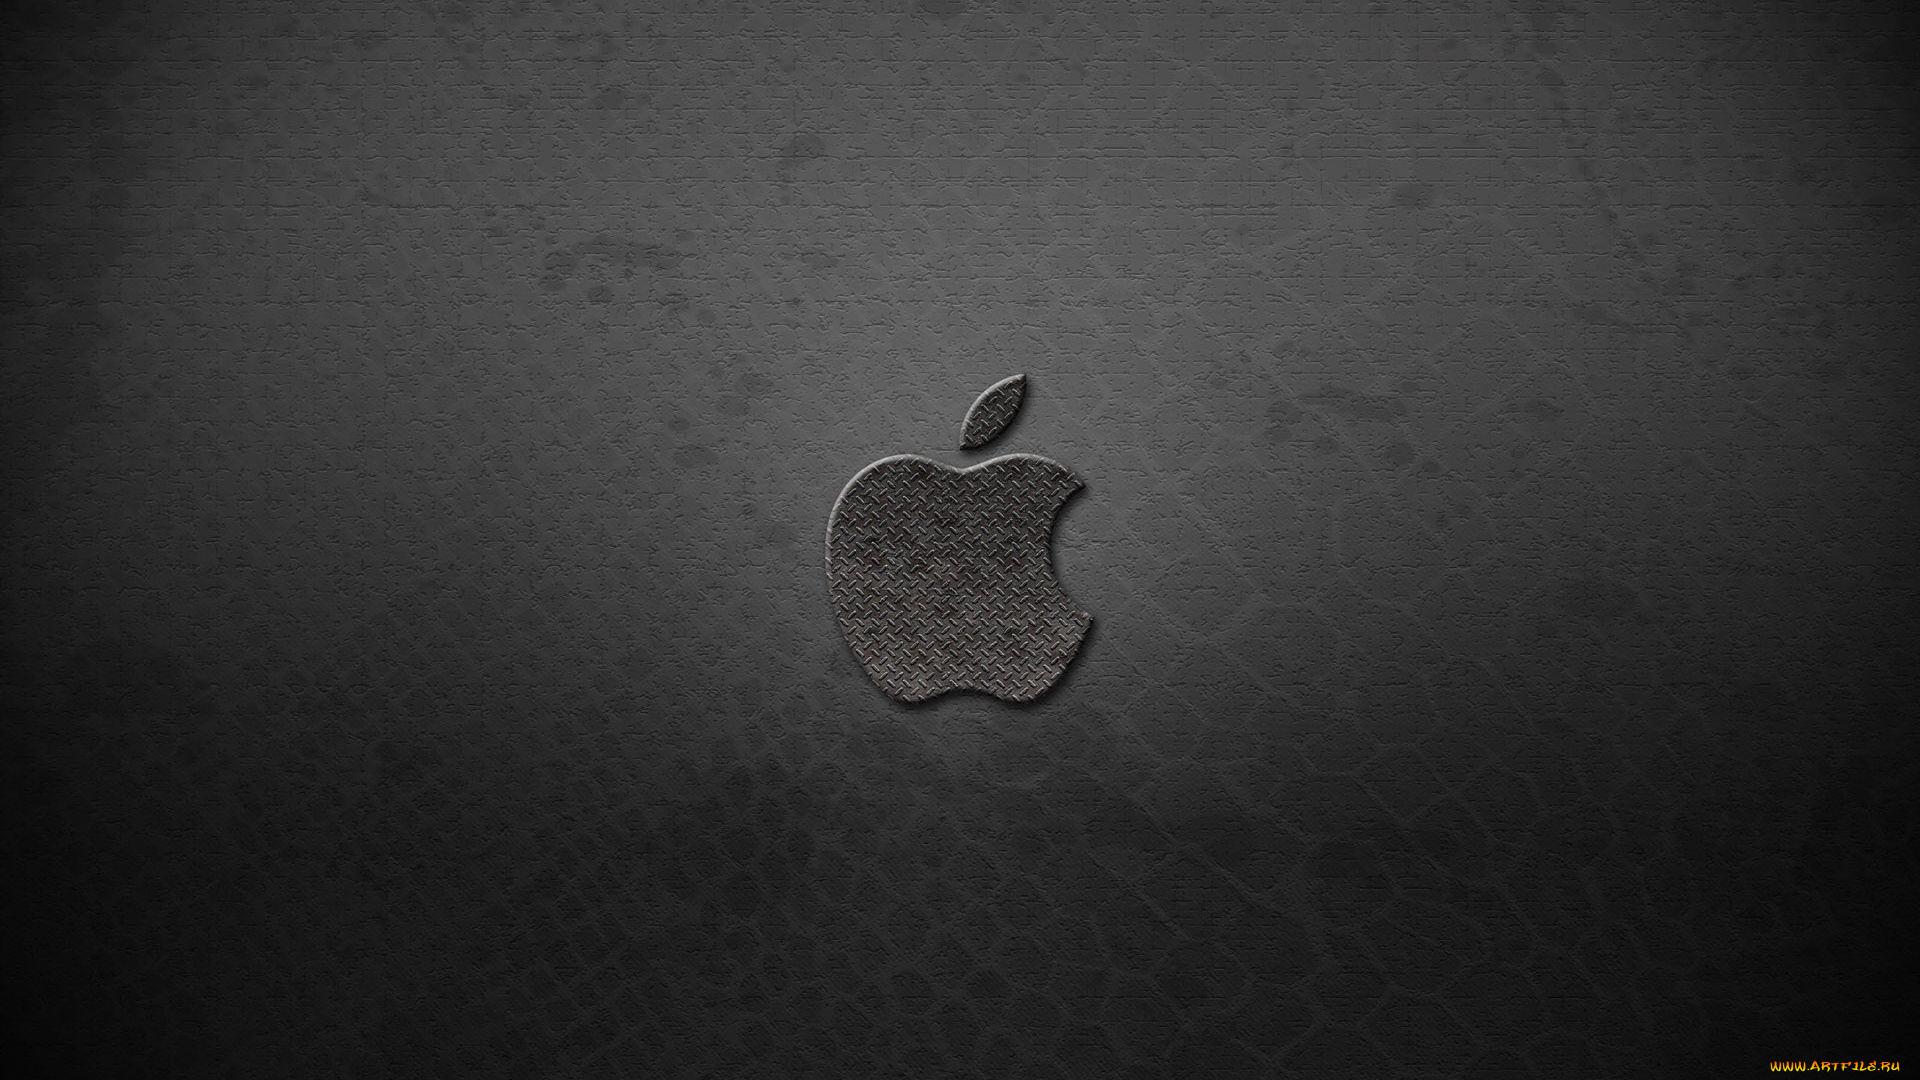 компьютеры, apple, логотип, яблоко